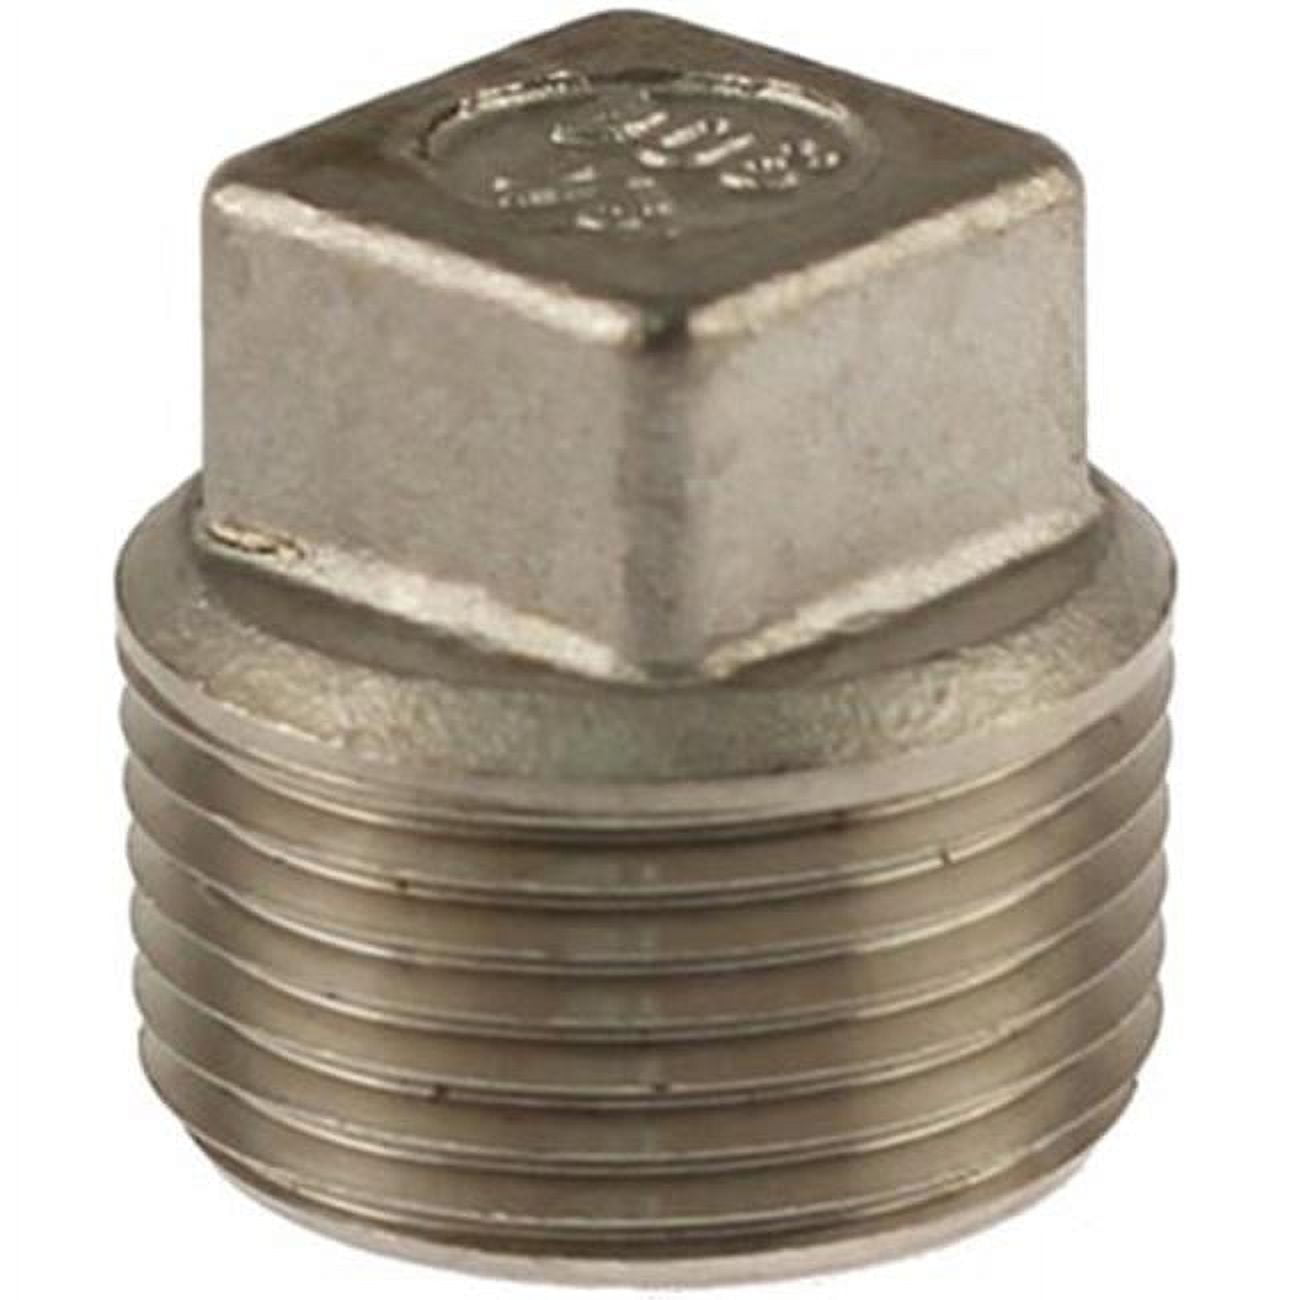 U2-ssp-05 0.5 In. 304 Stainless Steel Square Head Plug